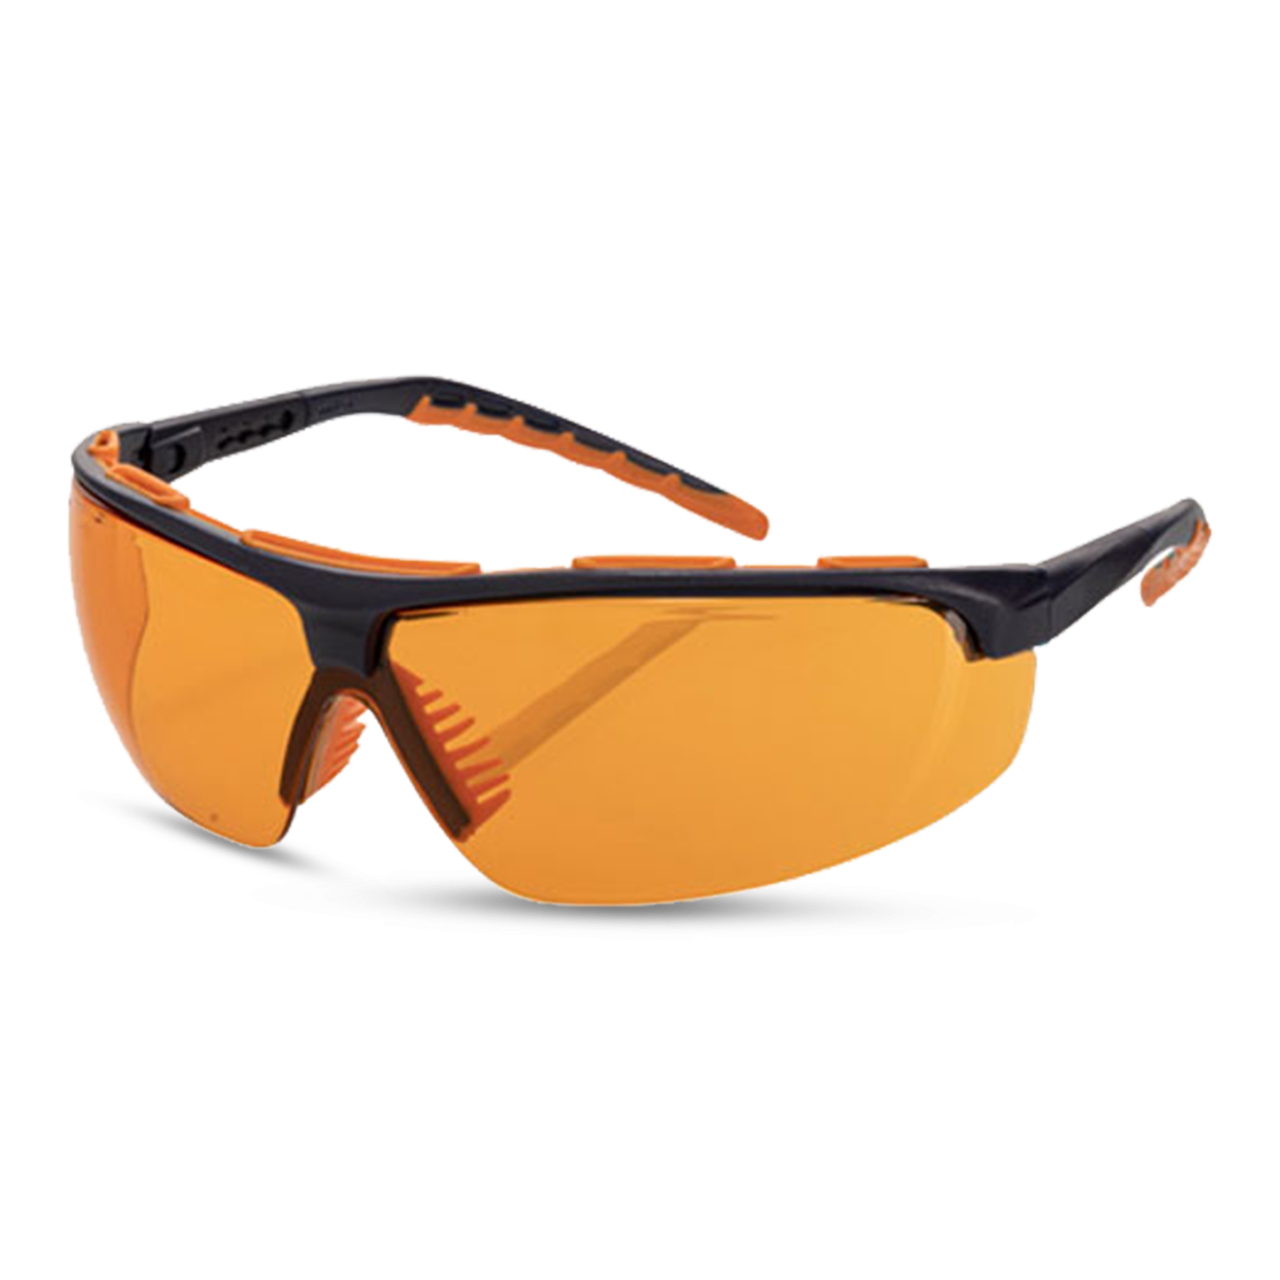 ARTISPEC® 300 Schutzbrille navy-blue orange/orange